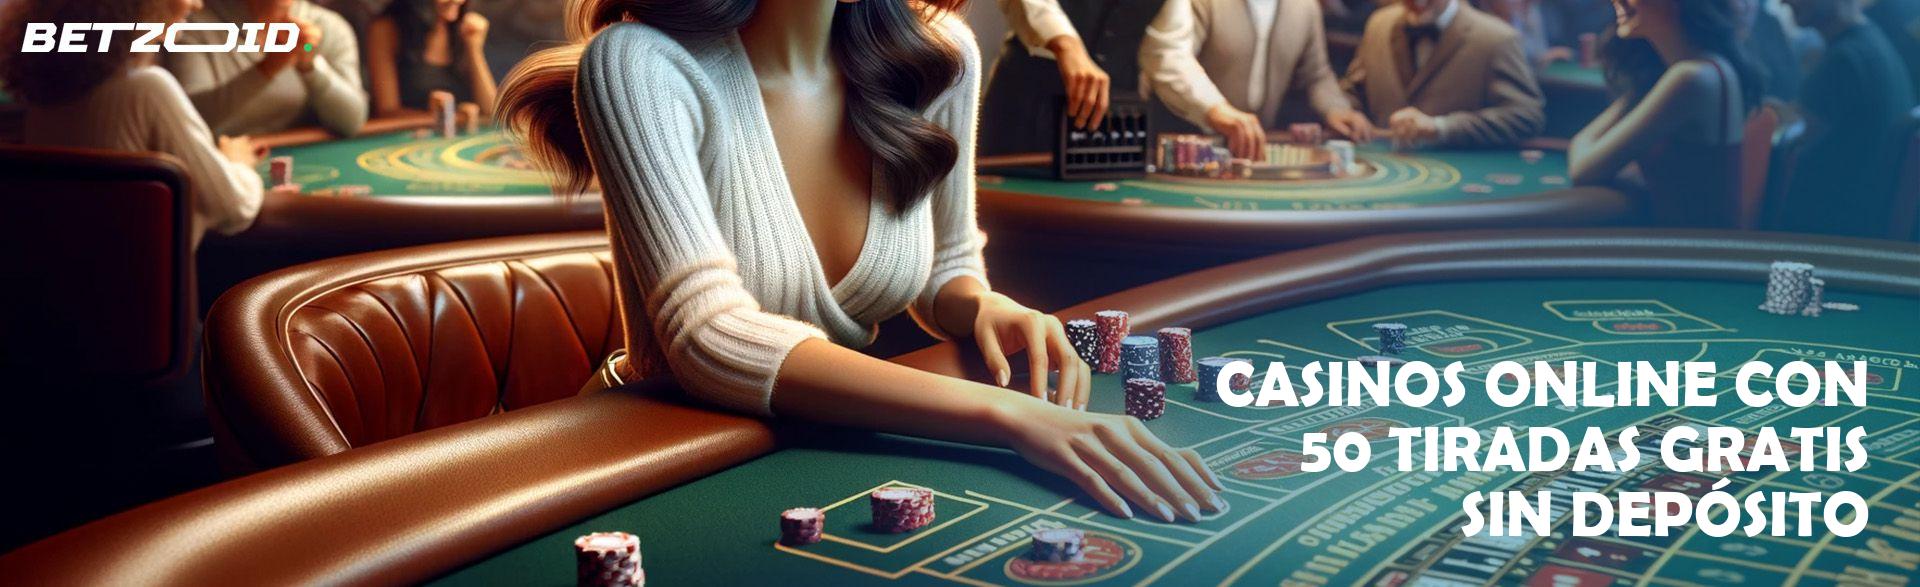 Casinos Online con 50 Tiradas Gratis sin Depósito.